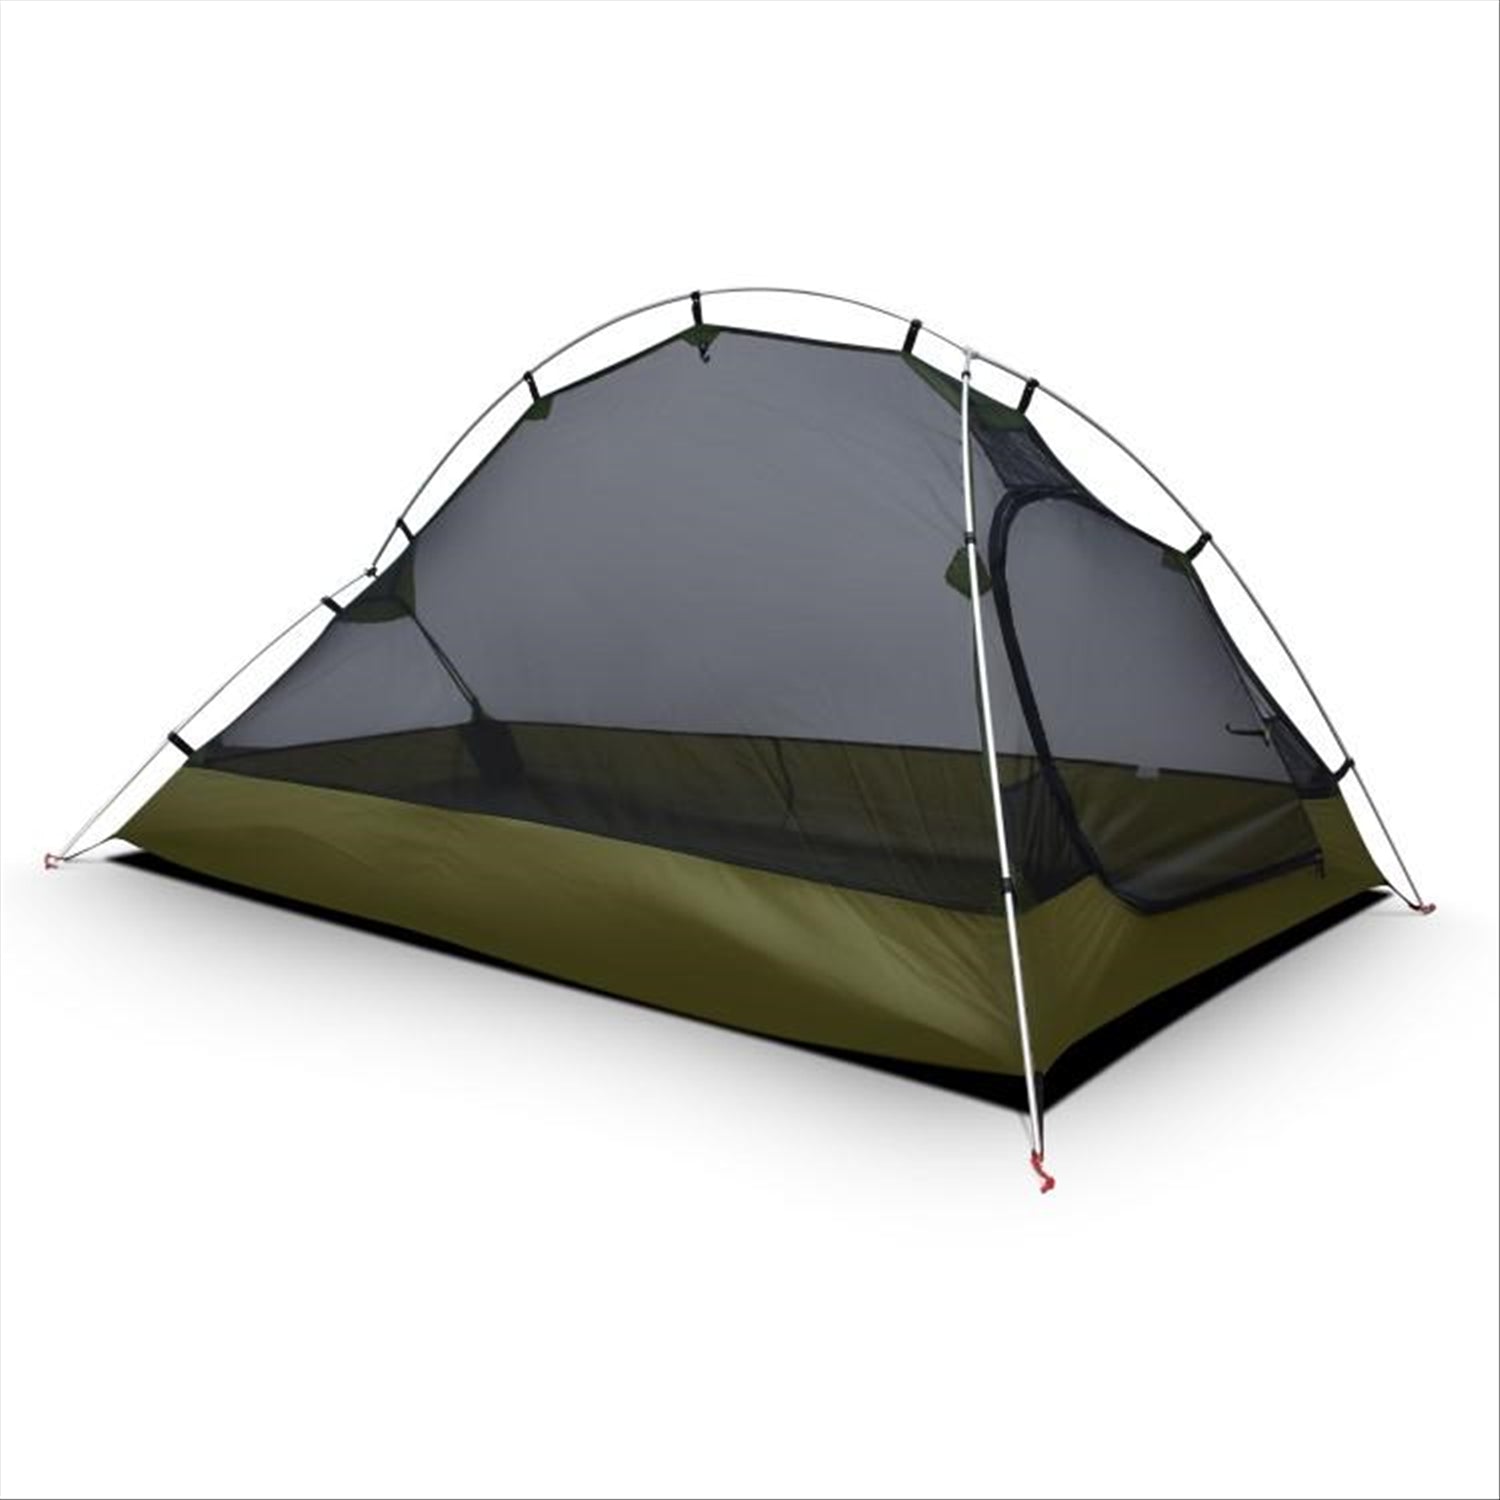 Tracker 2 - Ripstop Silnylon 2 Person Camping Tent 1.7kg